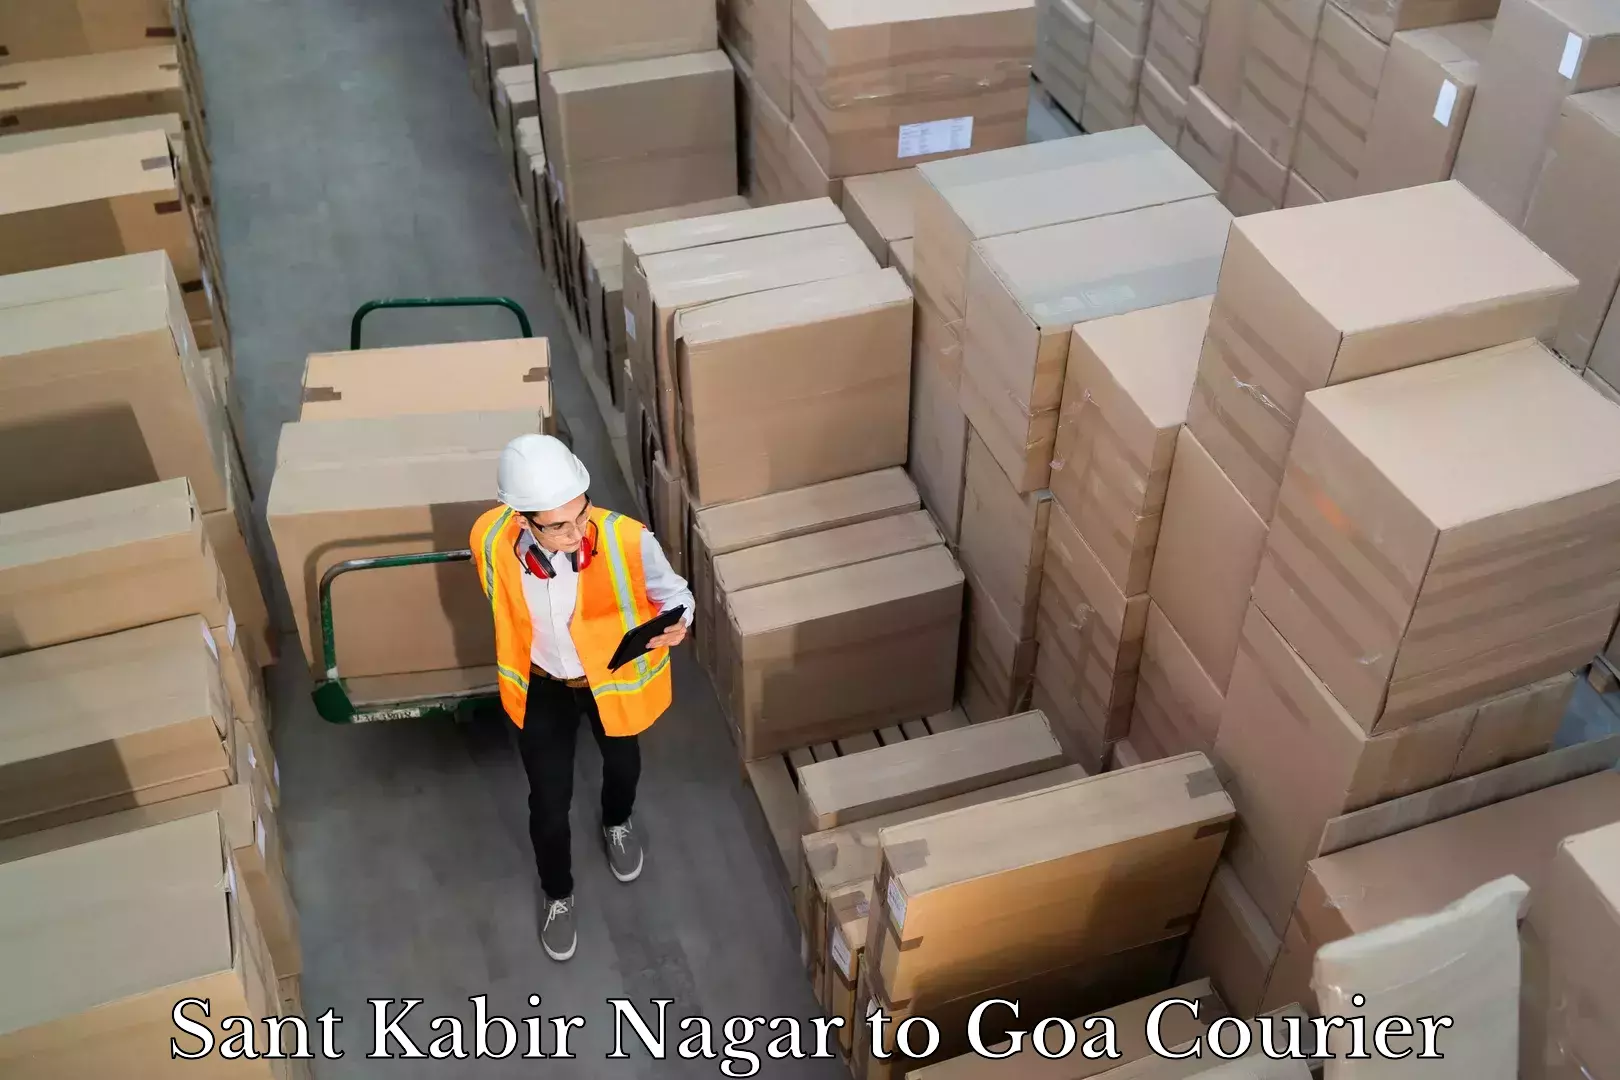 24/7 courier service Sant Kabir Nagar to Goa